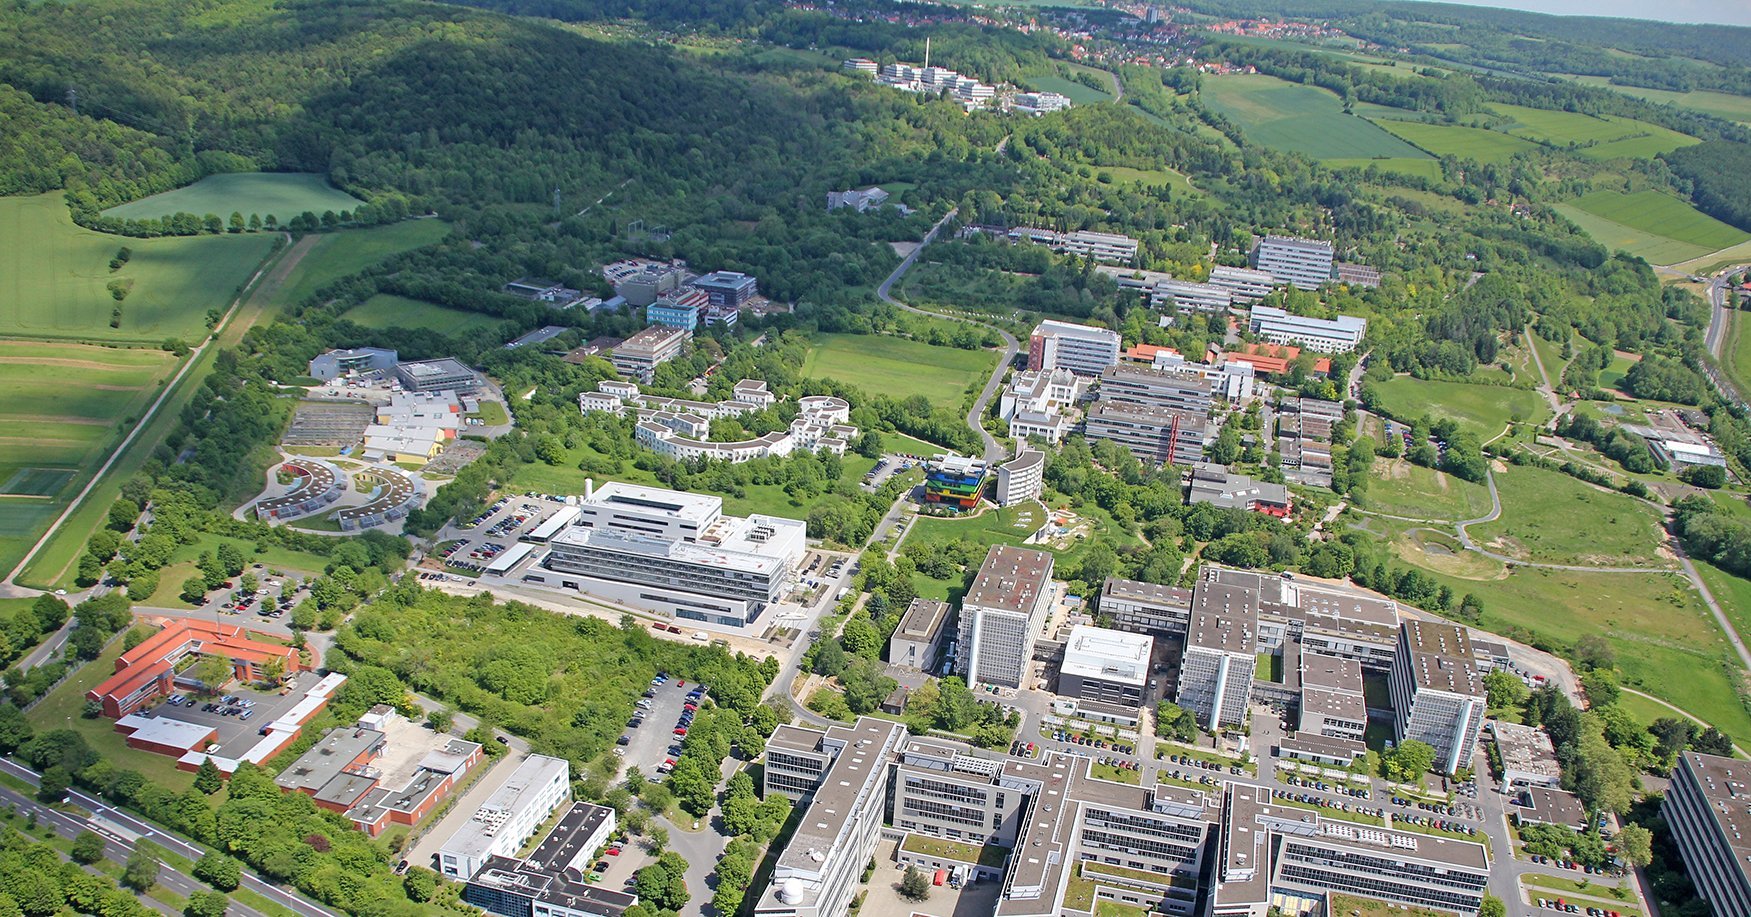 (c) Goettingen-campus.de